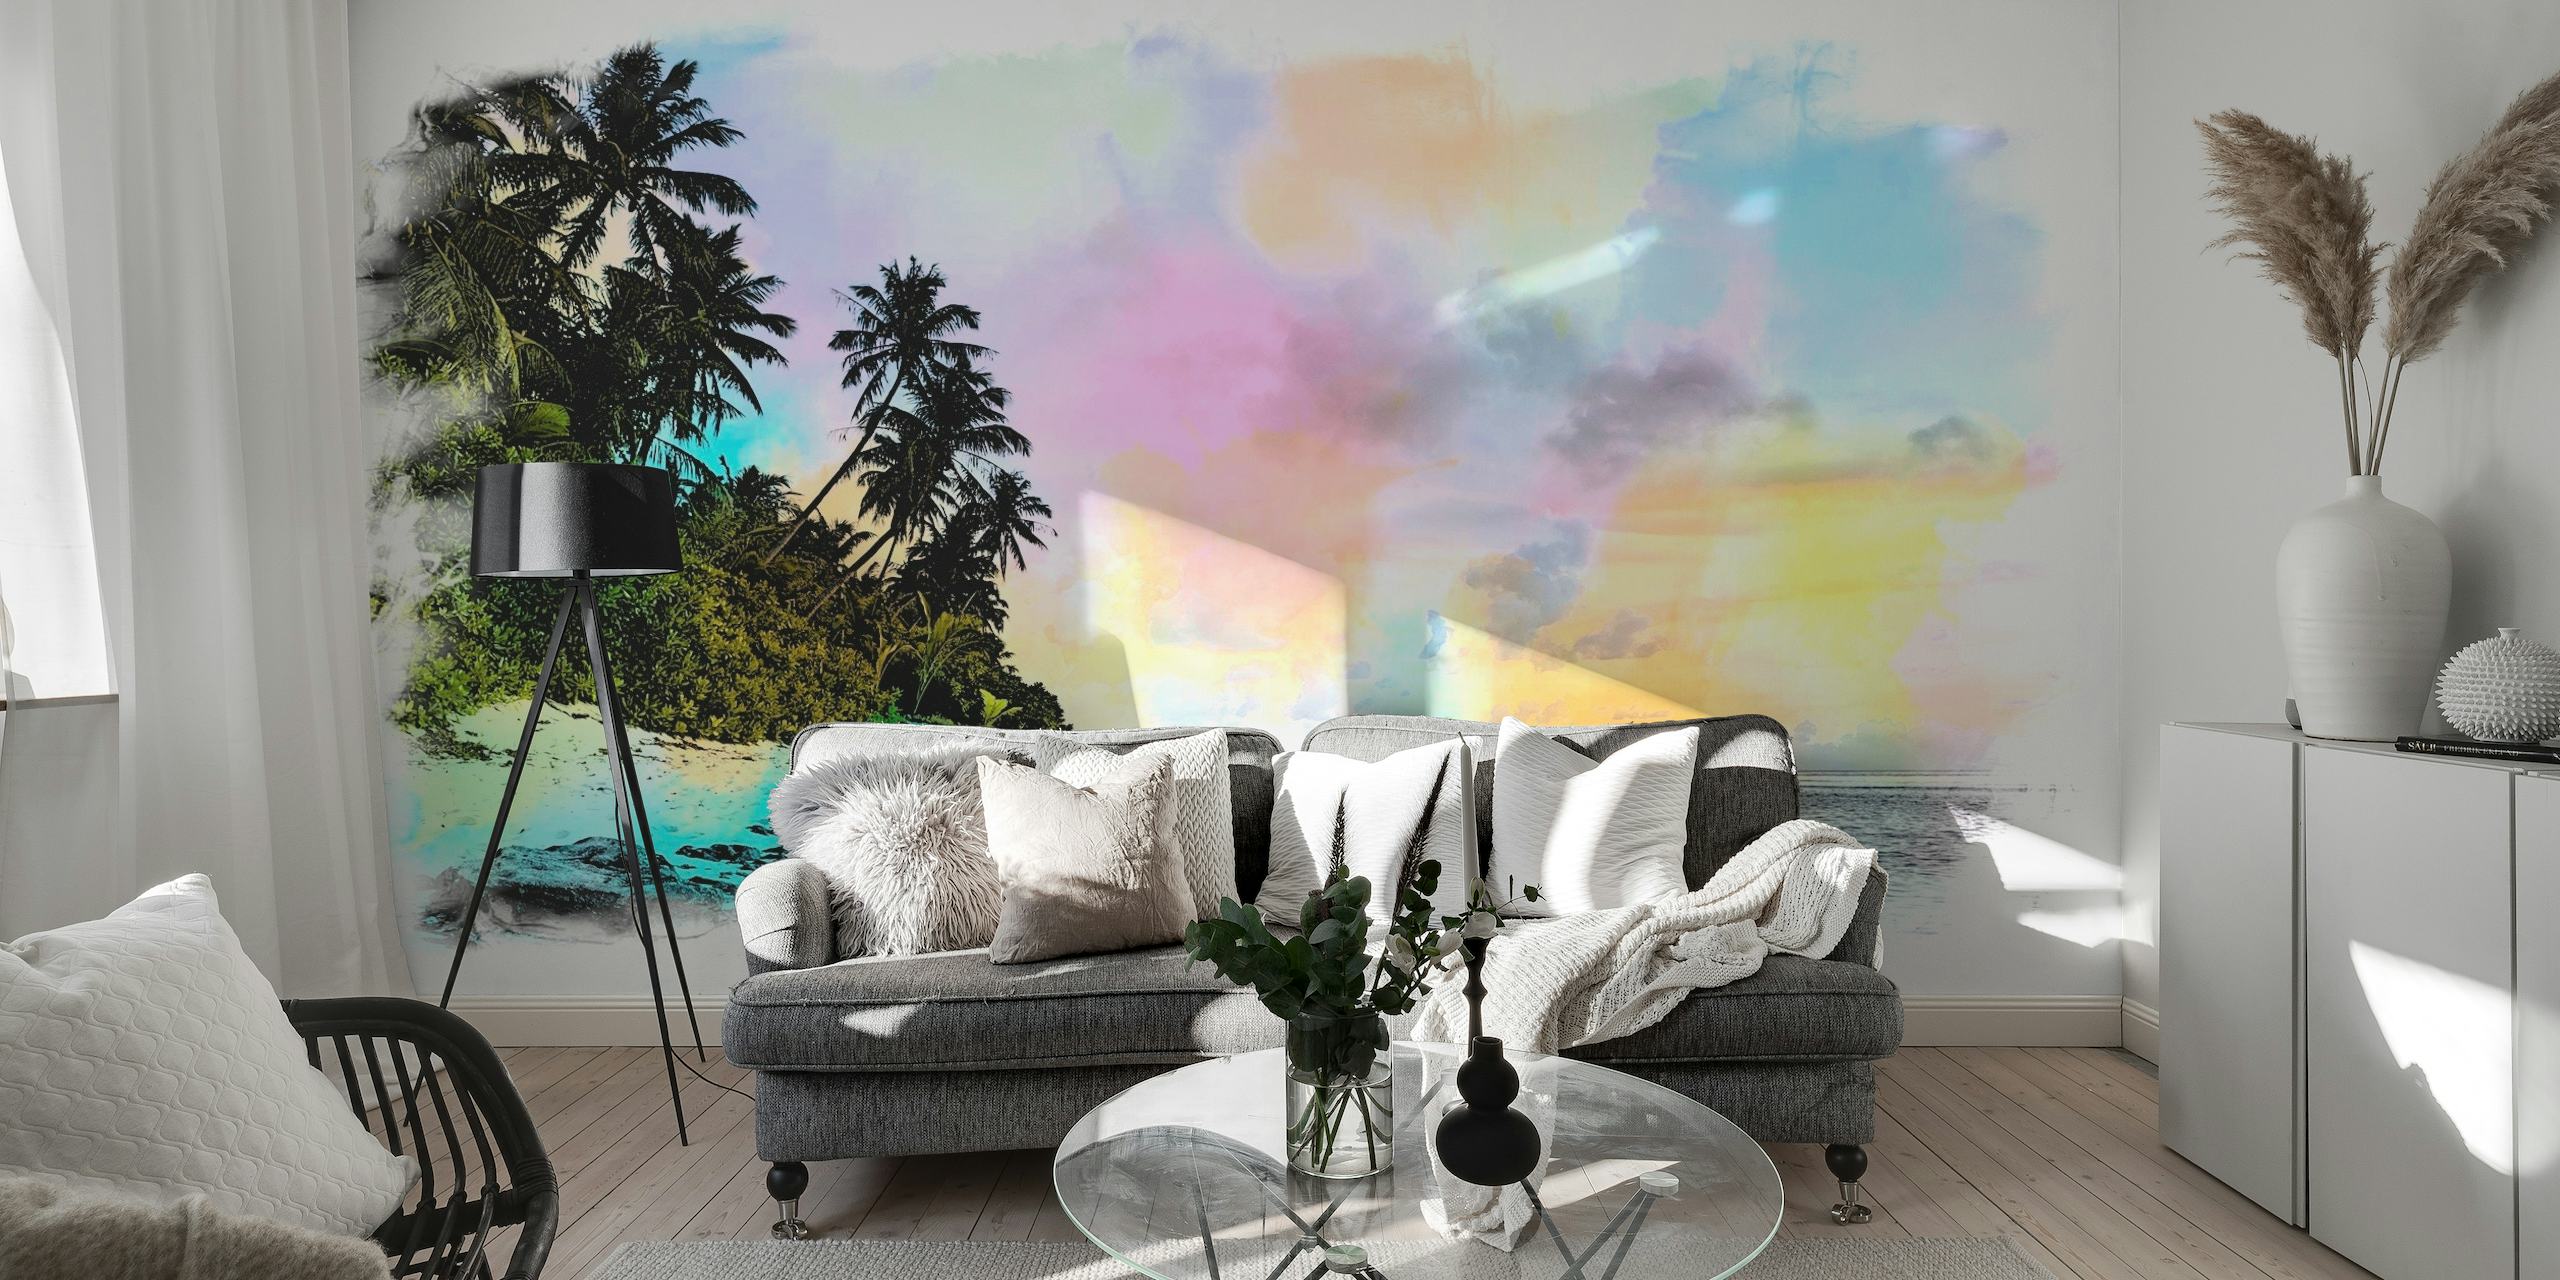 Representação artística em aquarela de uma praia de verão com palmeiras e céus em tons pastéis